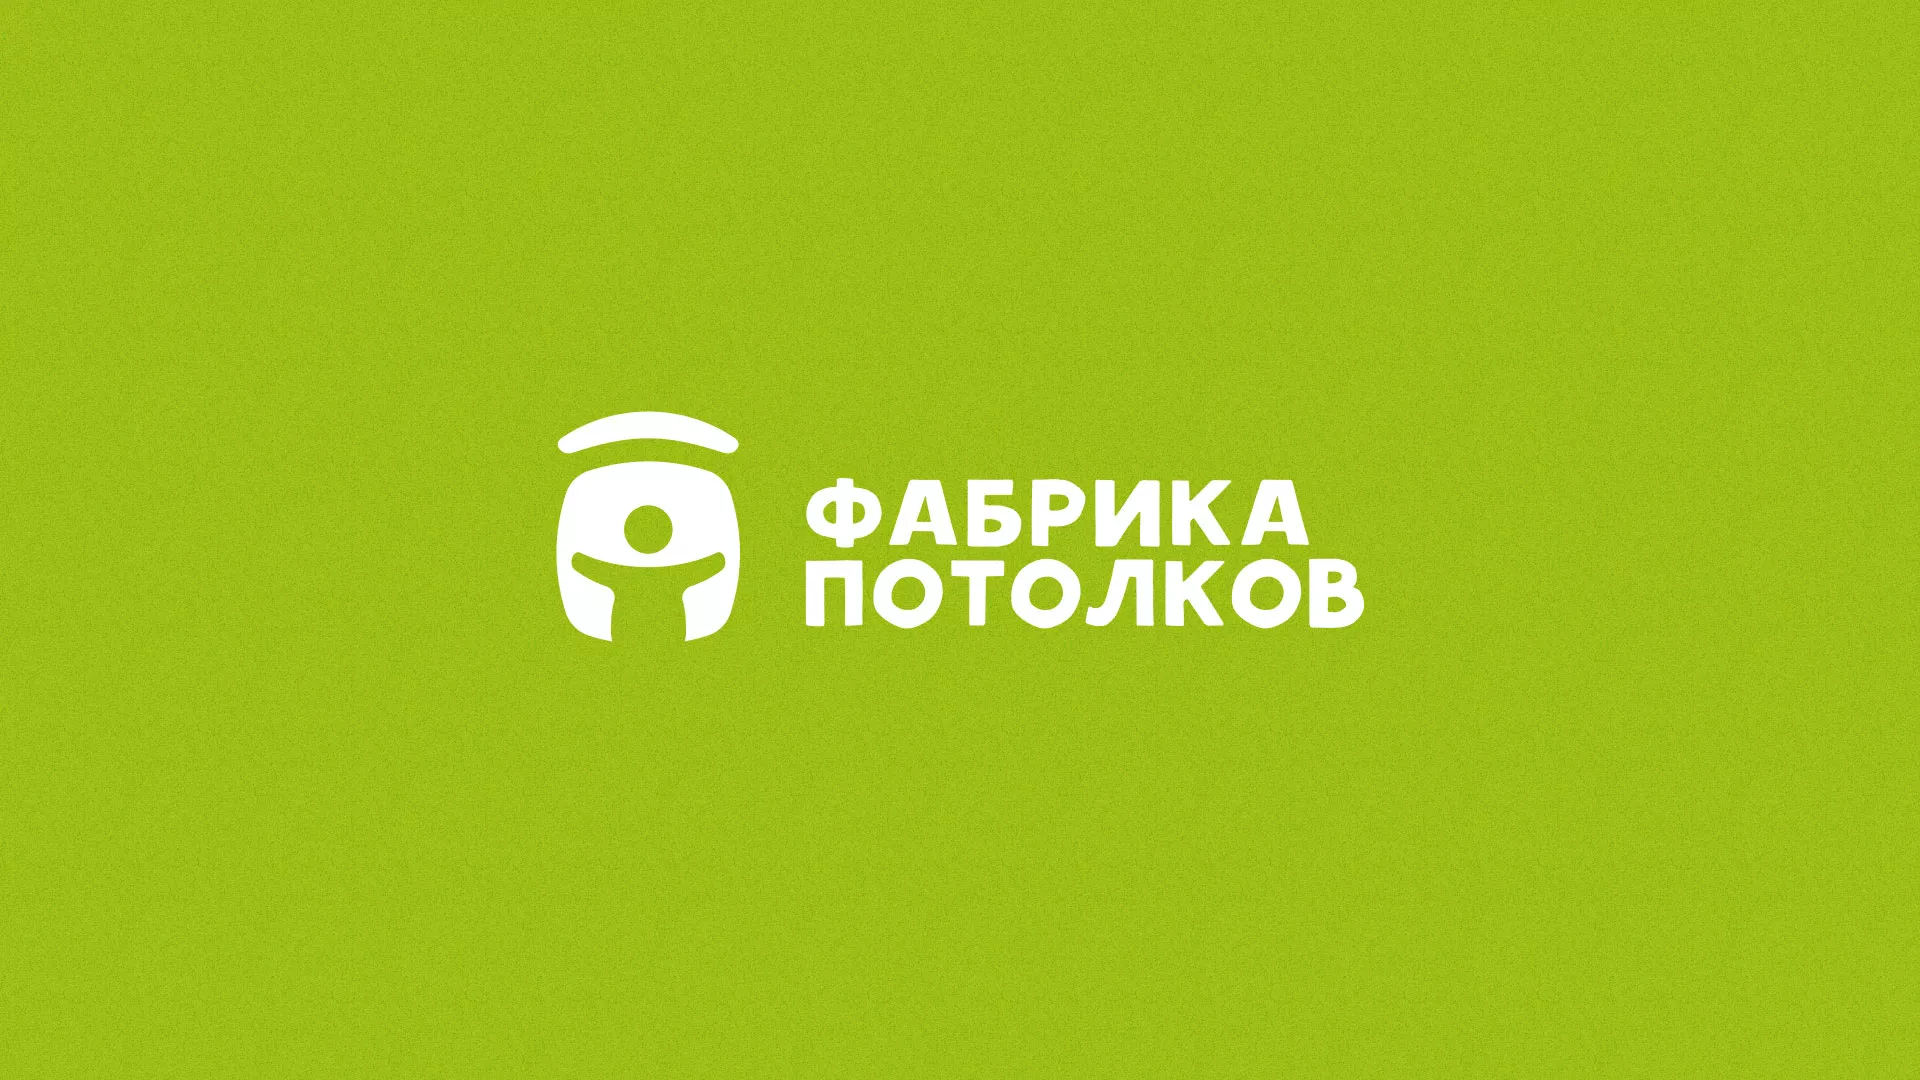 Разработка логотипа для производства натяжных потолков в Шахунье